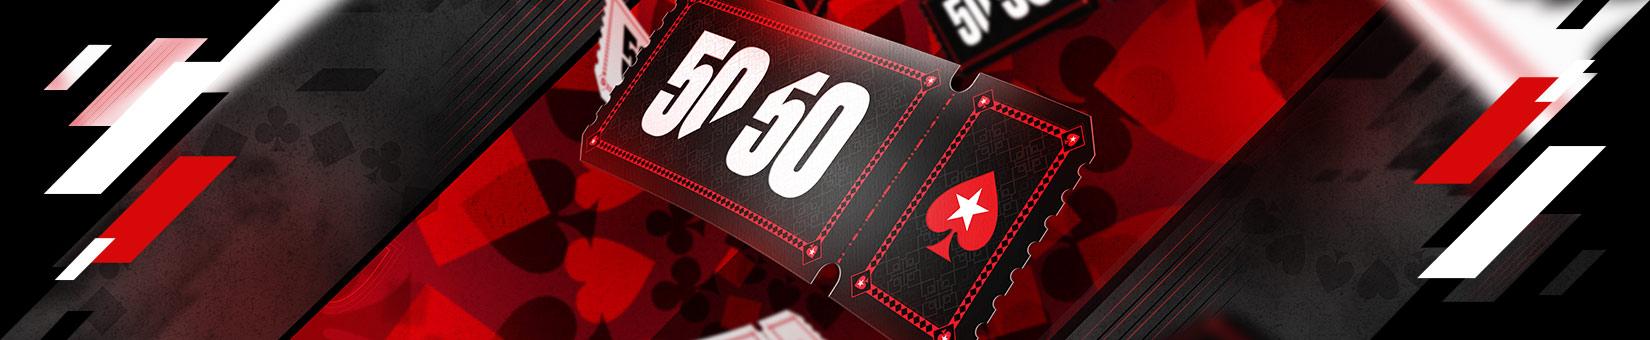 Pokerstars kondigt 50/50 series aan!